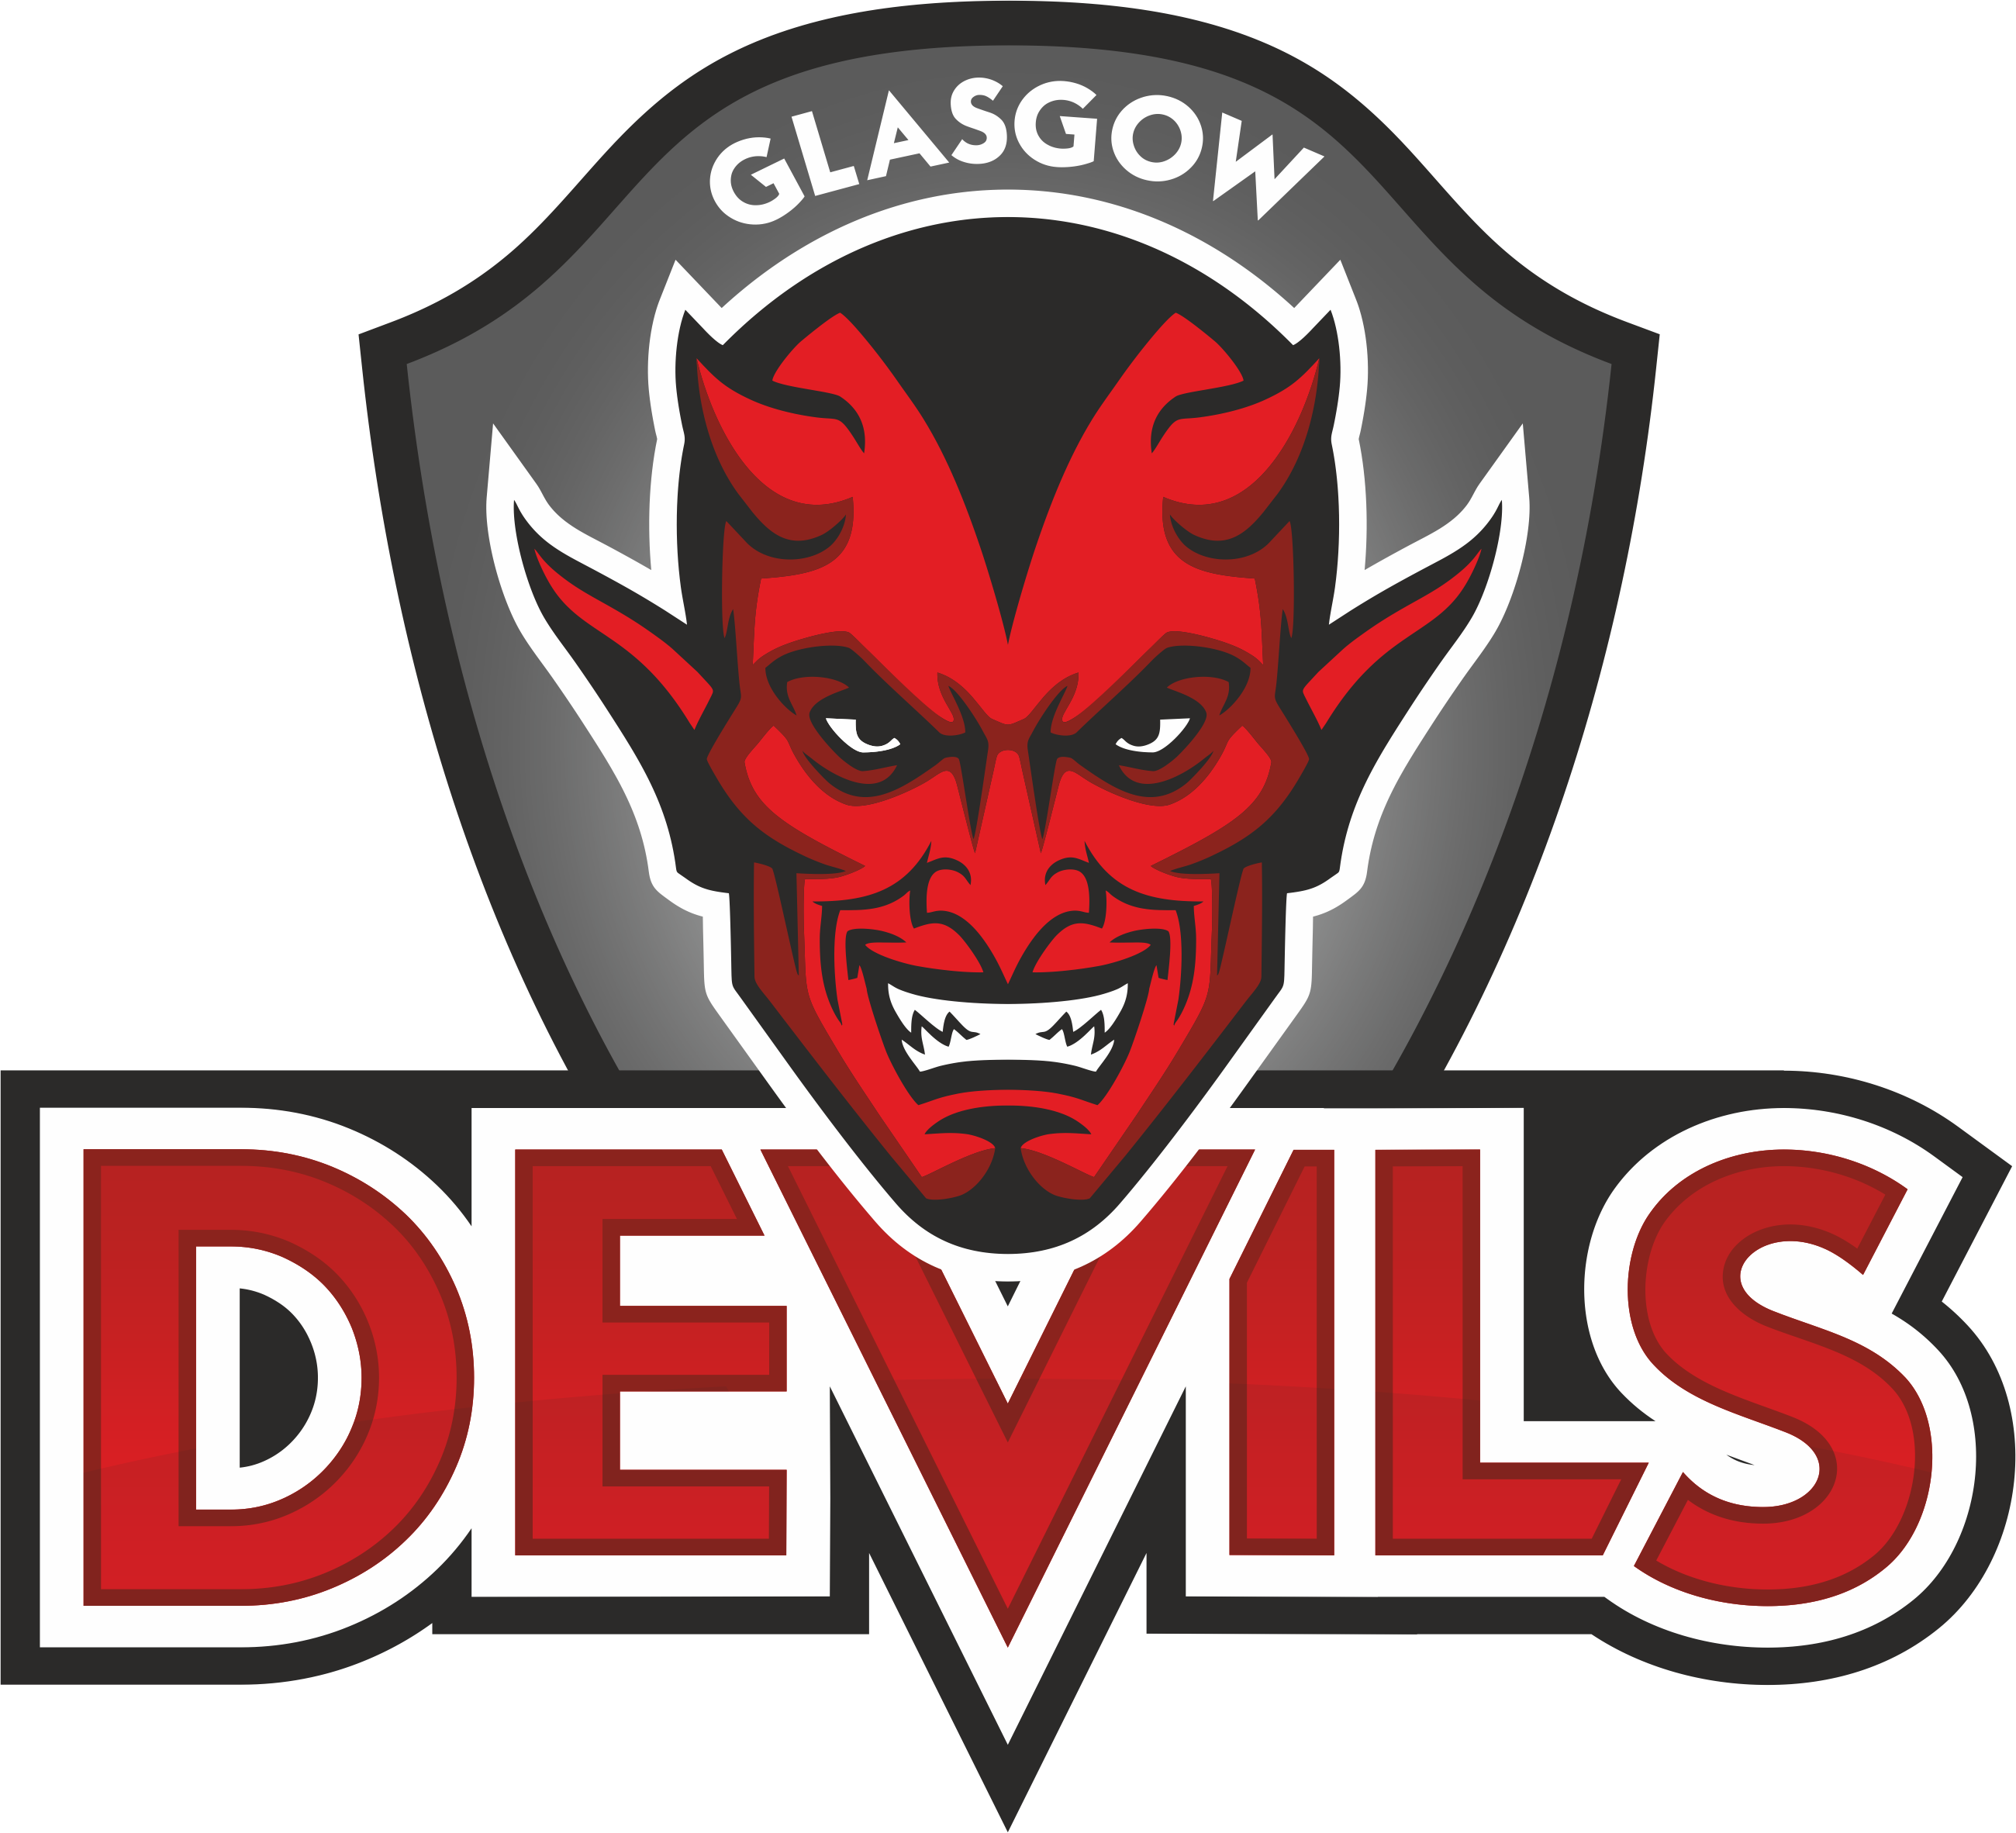 Glasgow Devils Basketball Club logo